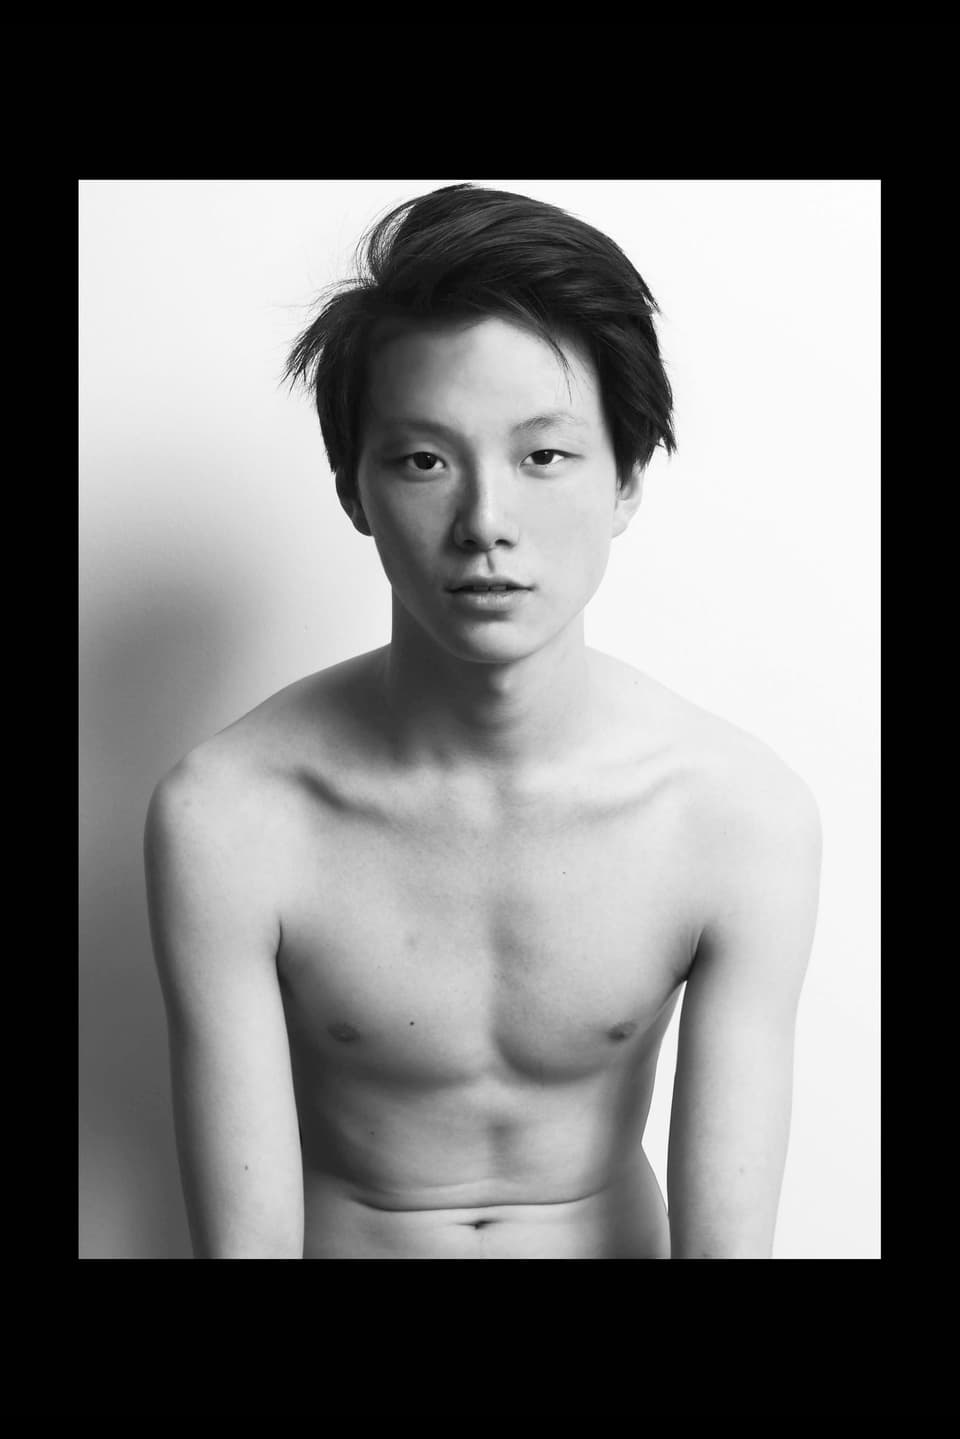 Ein asiatischer Junge mit nacktem Oberkörper.